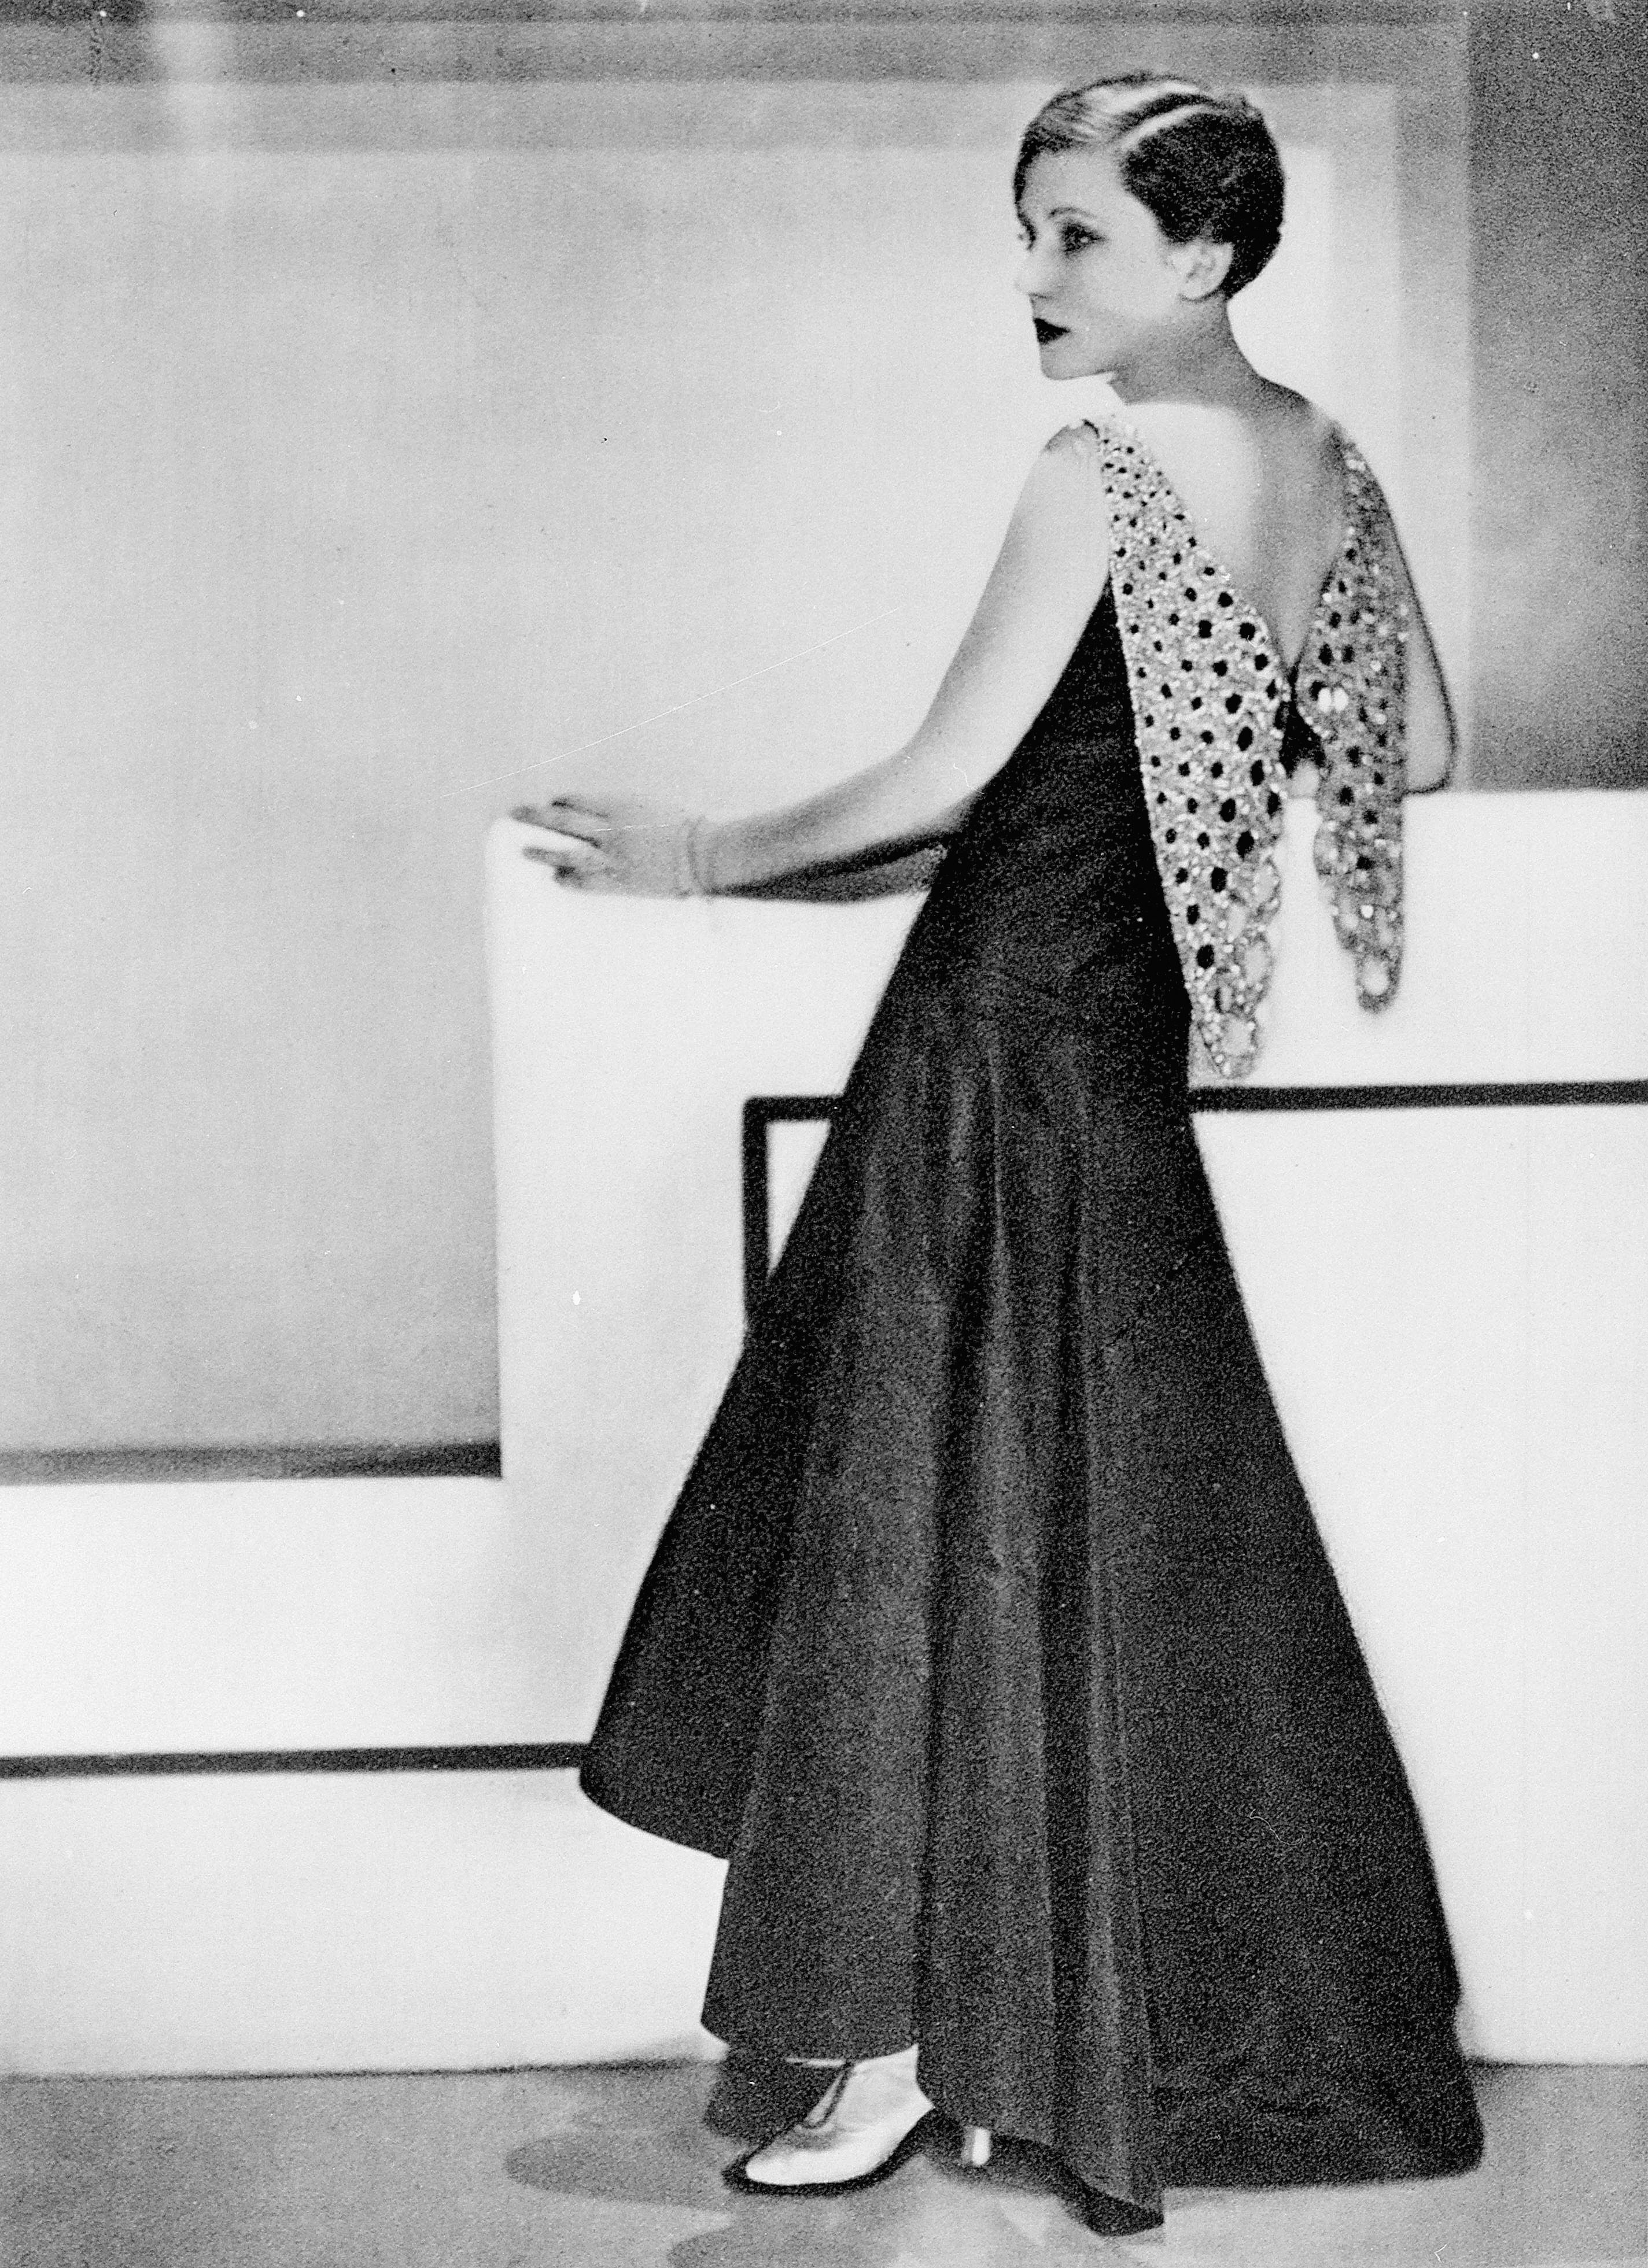 Storia della moda, gli anni '20 e l'inizio del glamour